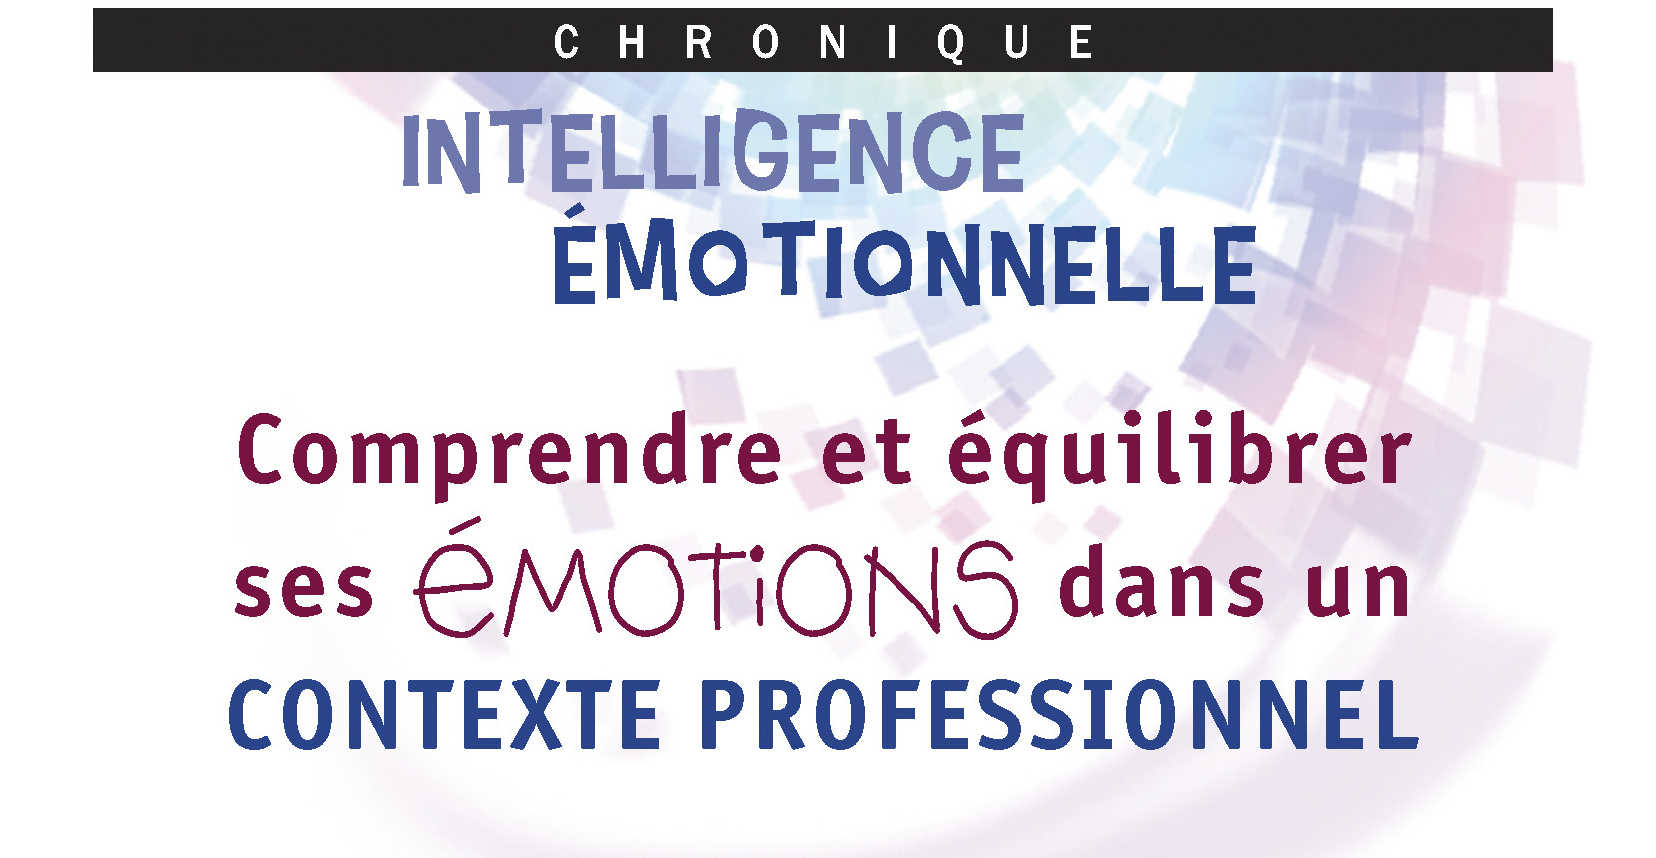 Intelligence émotionnelle. Comprendre et équilibrer ses émotions dans un contexte professionnel - Micheline Létourneau